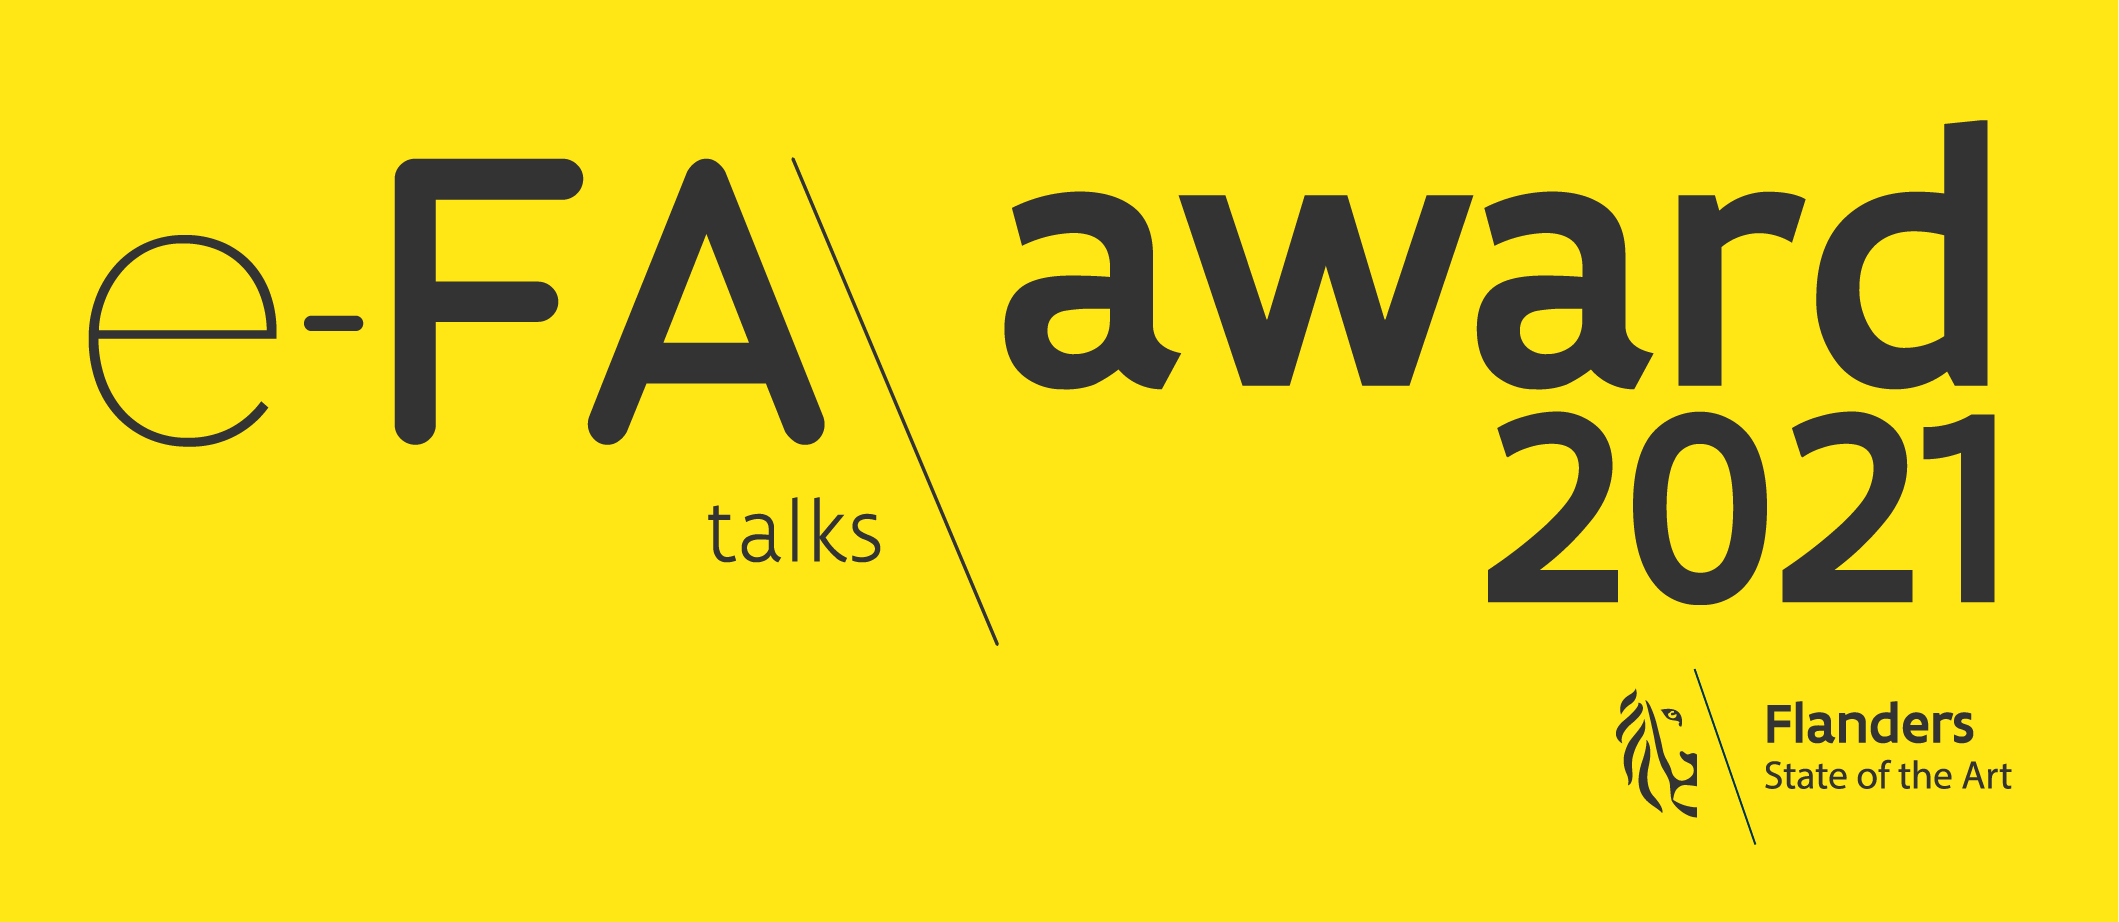 E-fa talks award 2022